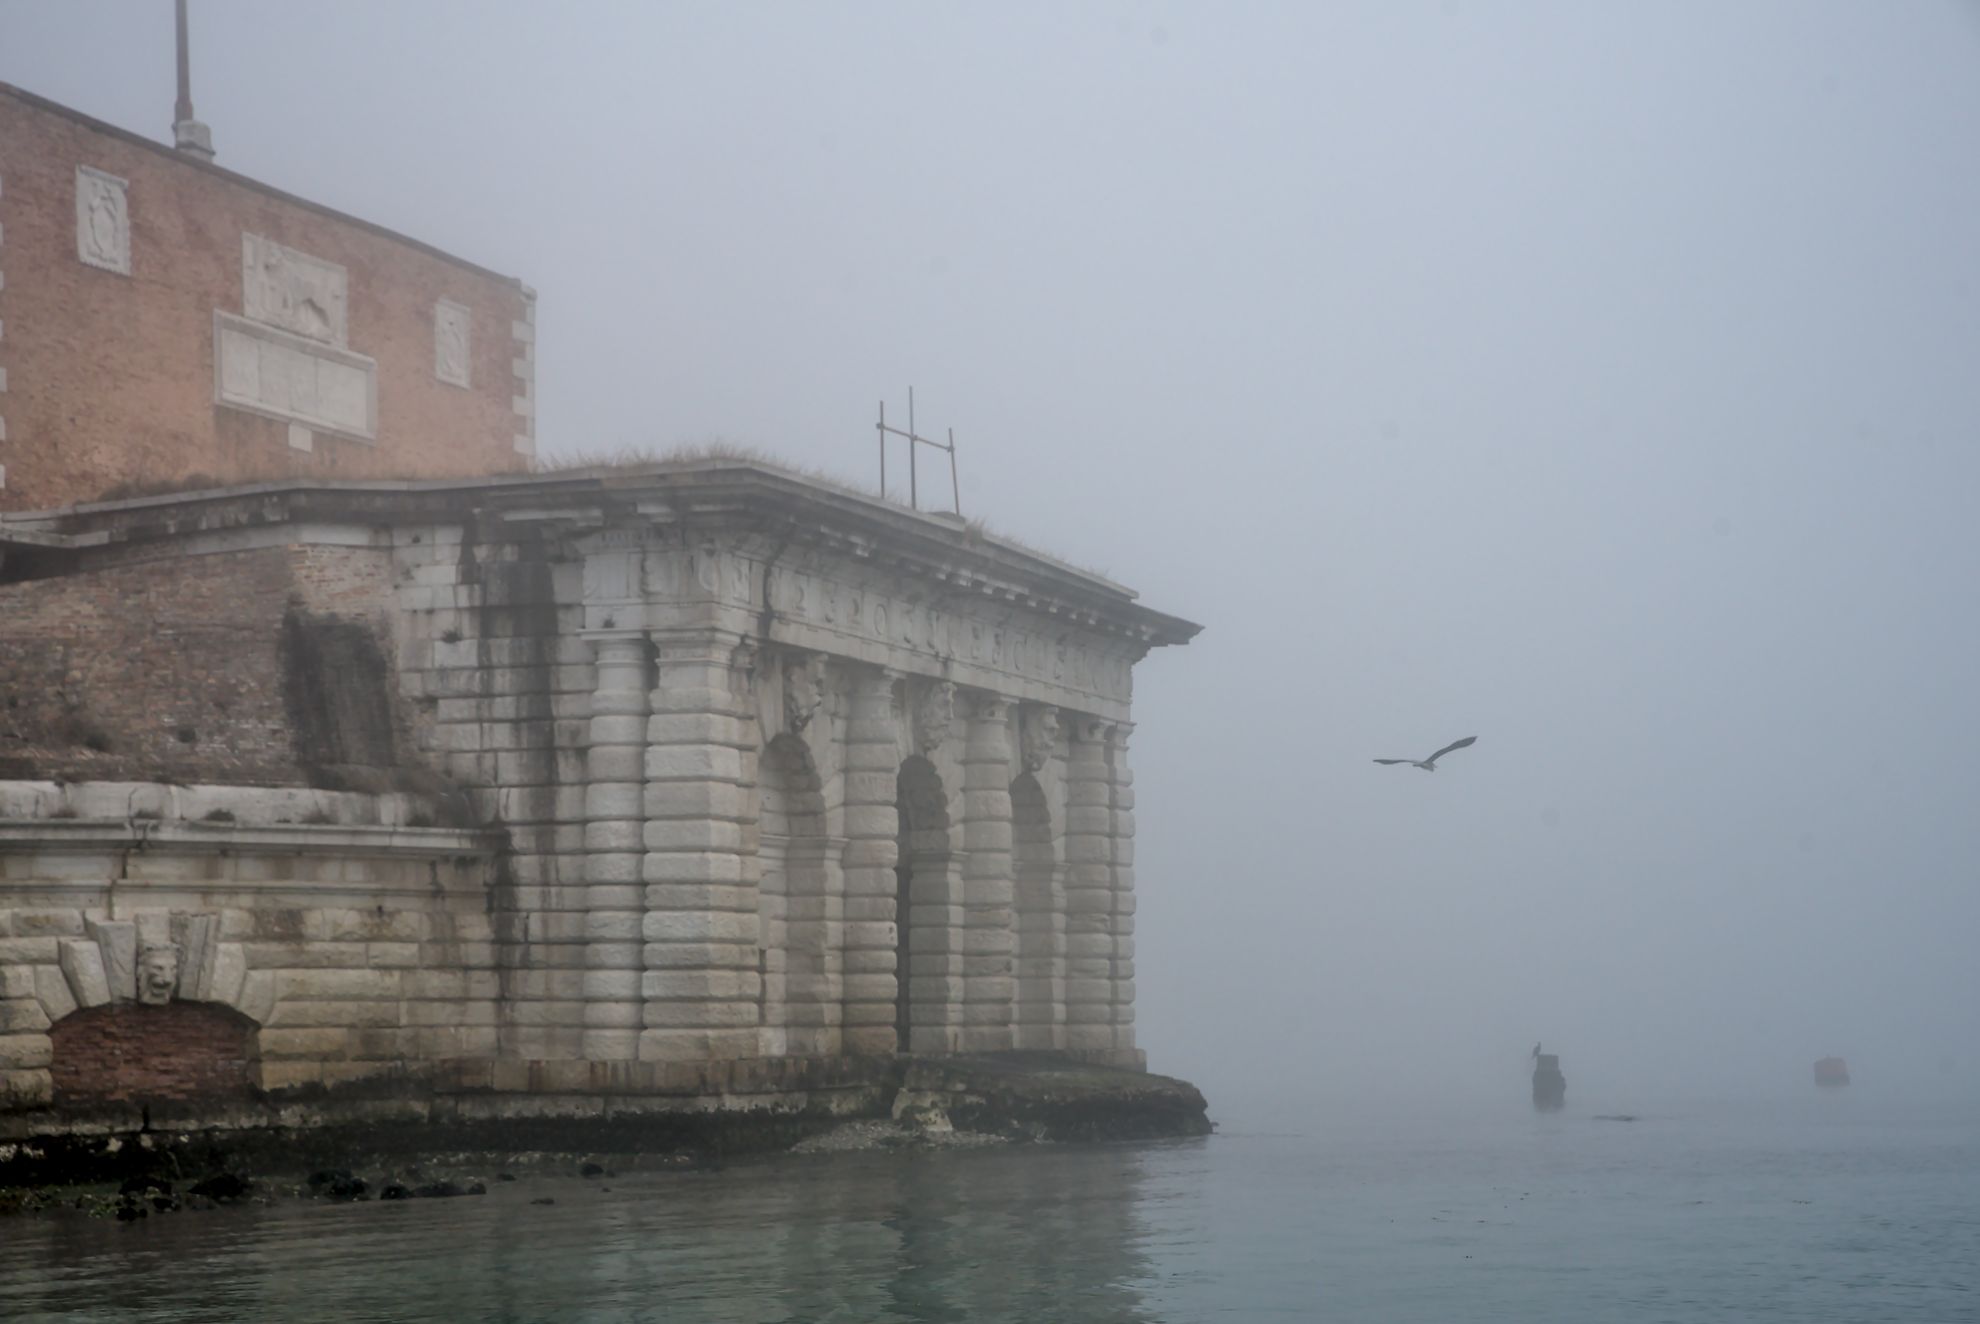 The Venetian lagoon on the fog - Sant'Andrea